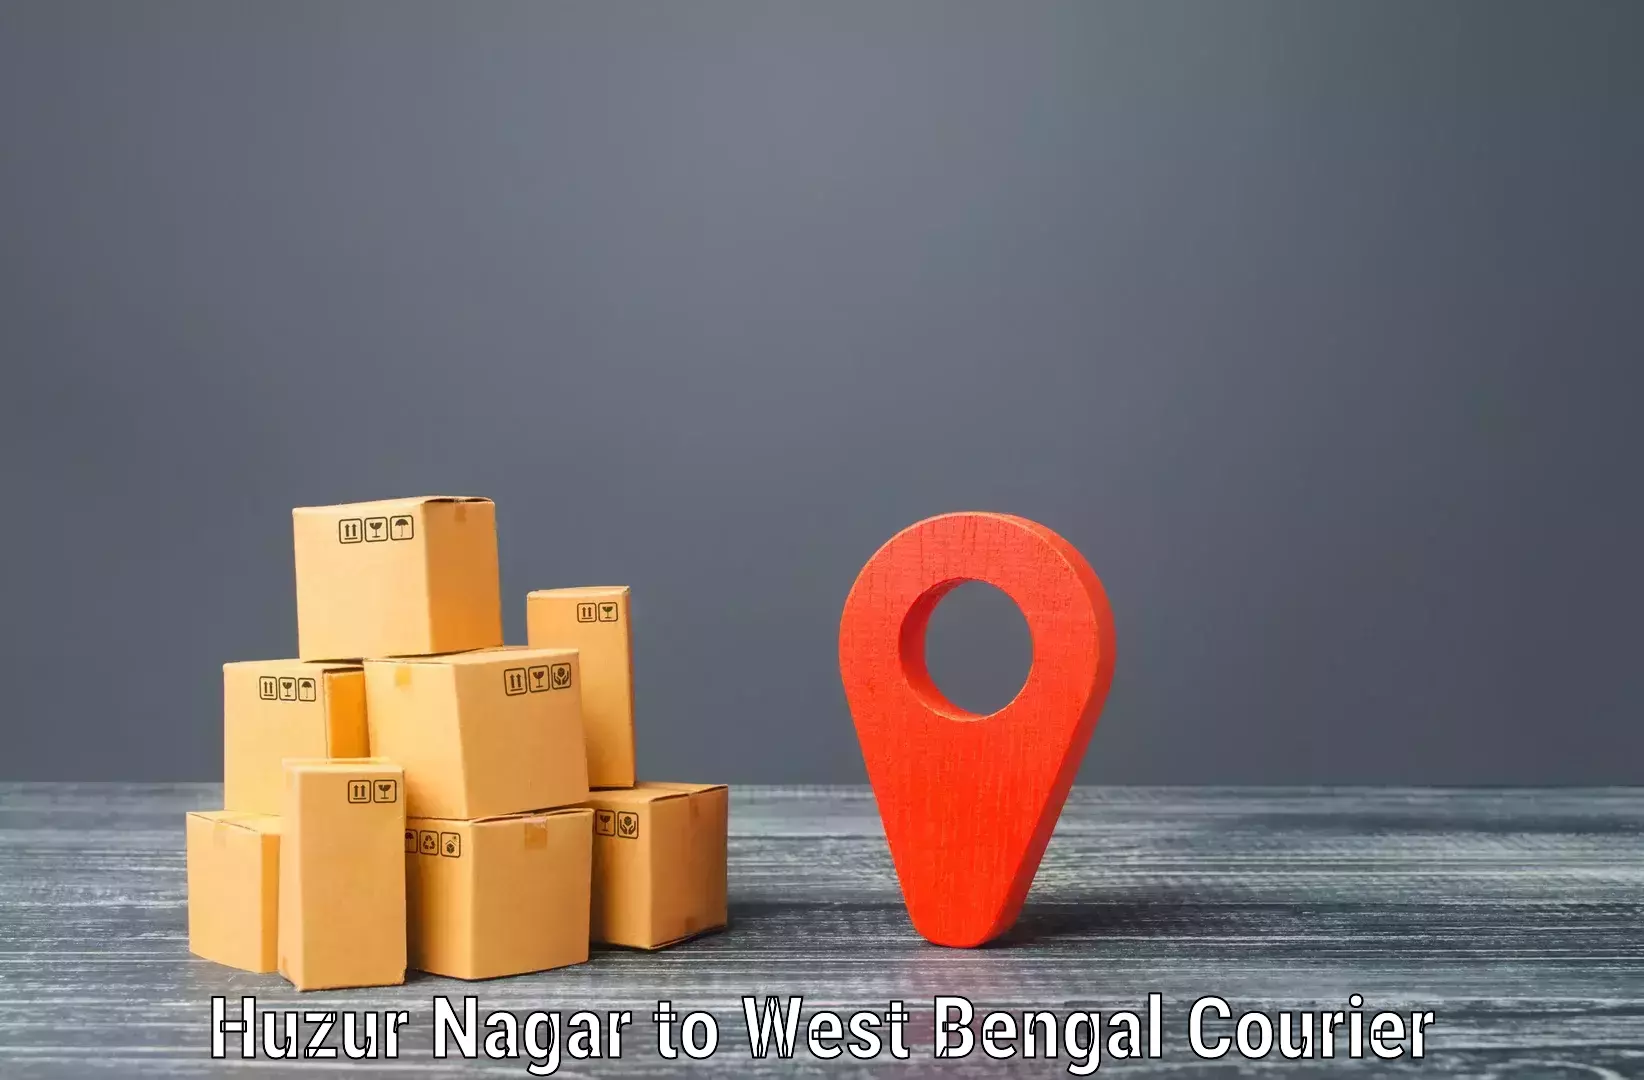 Weekend courier service Huzur Nagar to Haldia port